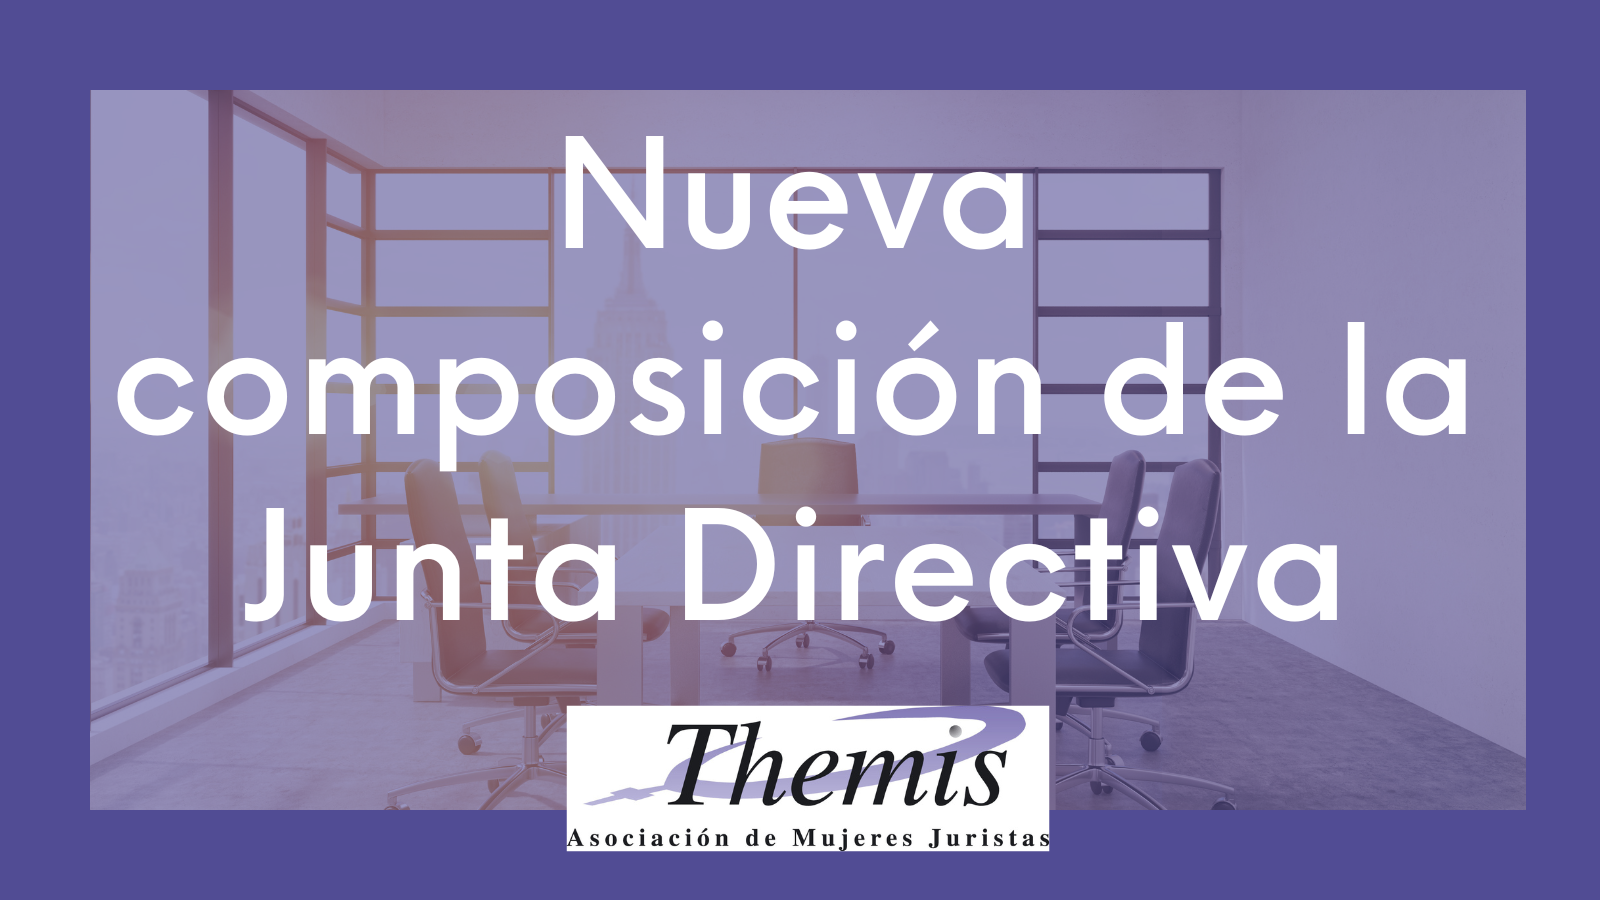 Nueva composición de la Junta Directiva de la Asociación de Mujeres Juristas Themis